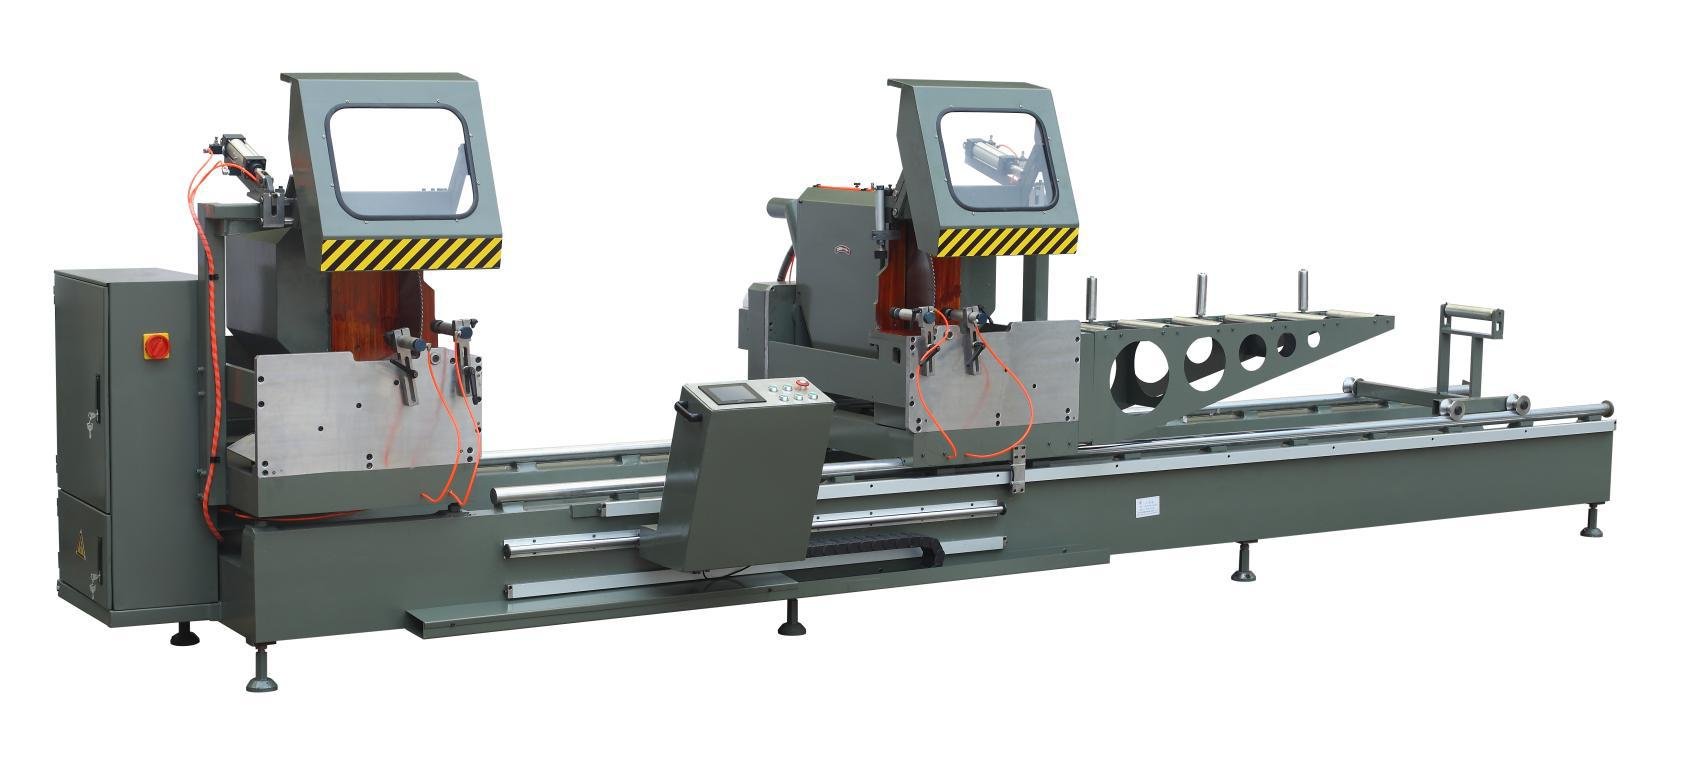 kingtool aluminium machinery Array image440